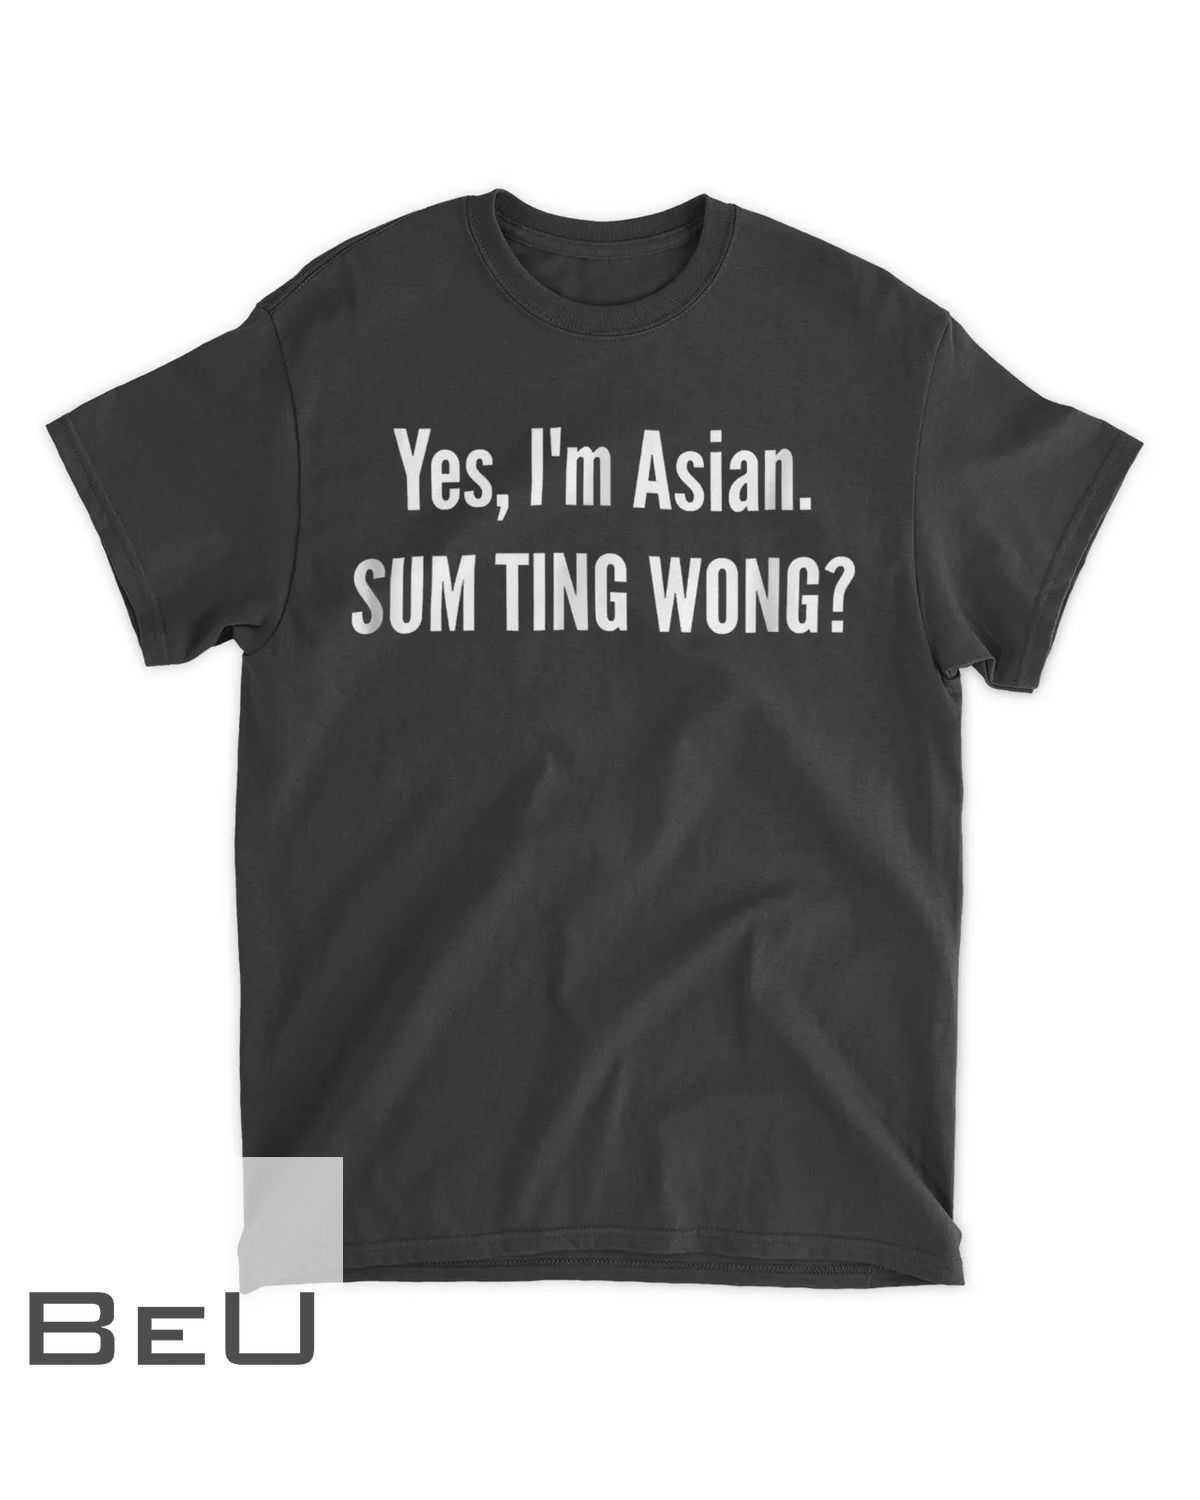 Sum Ting Wong Funny Chinese Pun Asian Dad Joke T-shirt